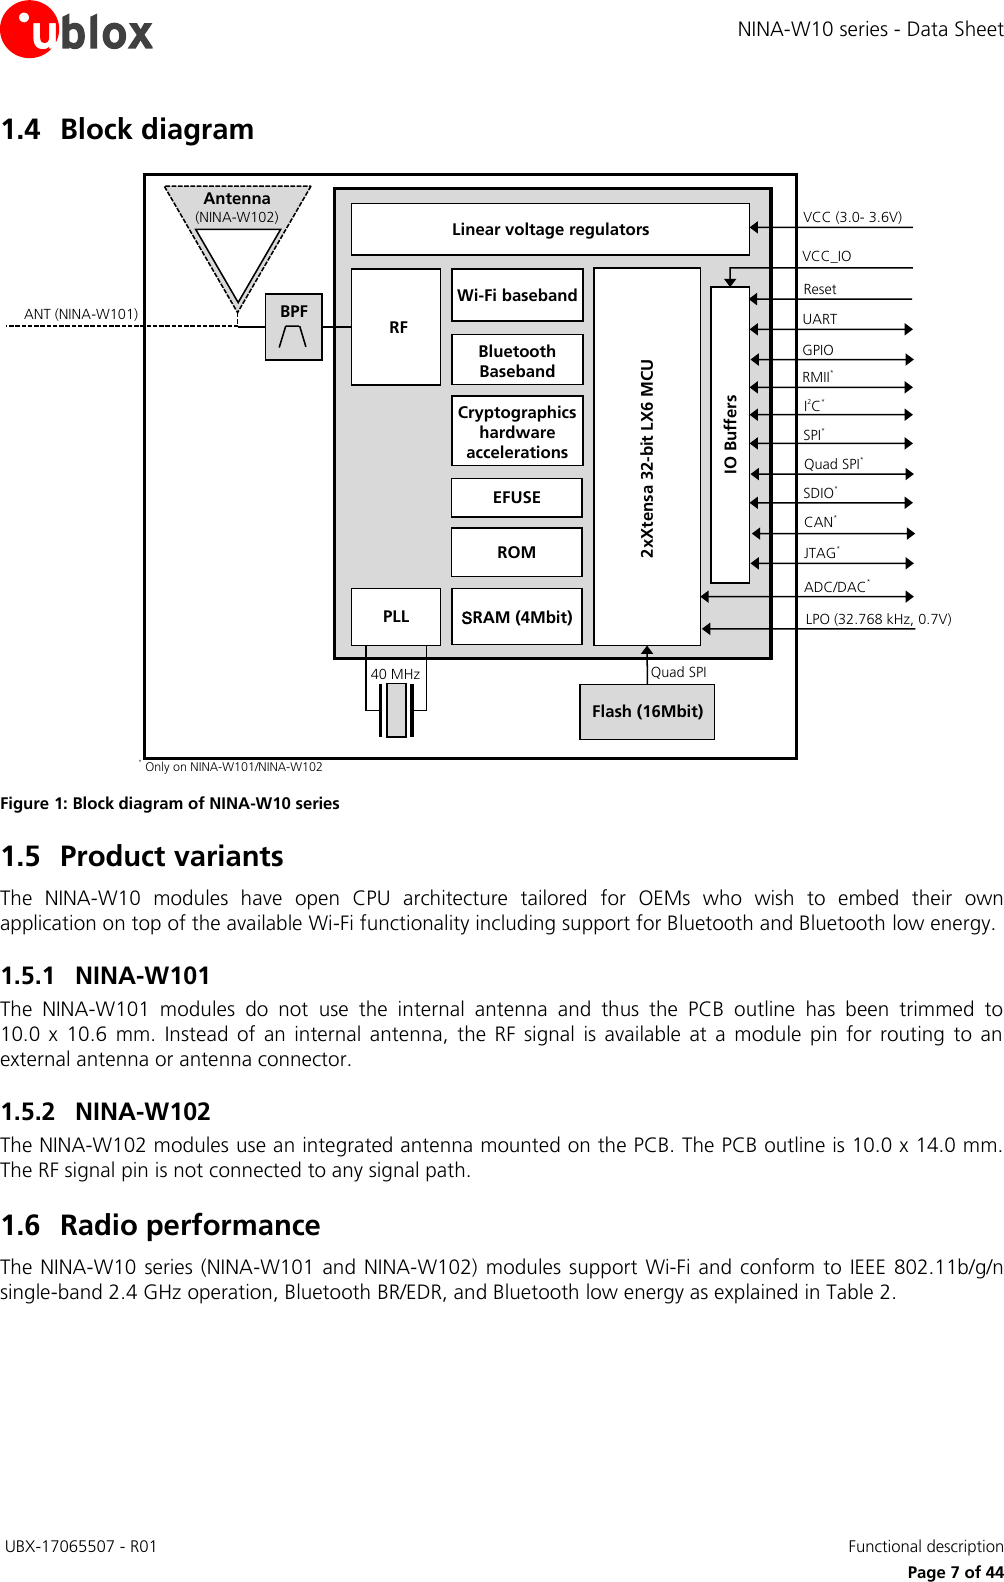 Page 7 of u blox NINAW10 Wireless Communication System Module User Manual NINA W10 series